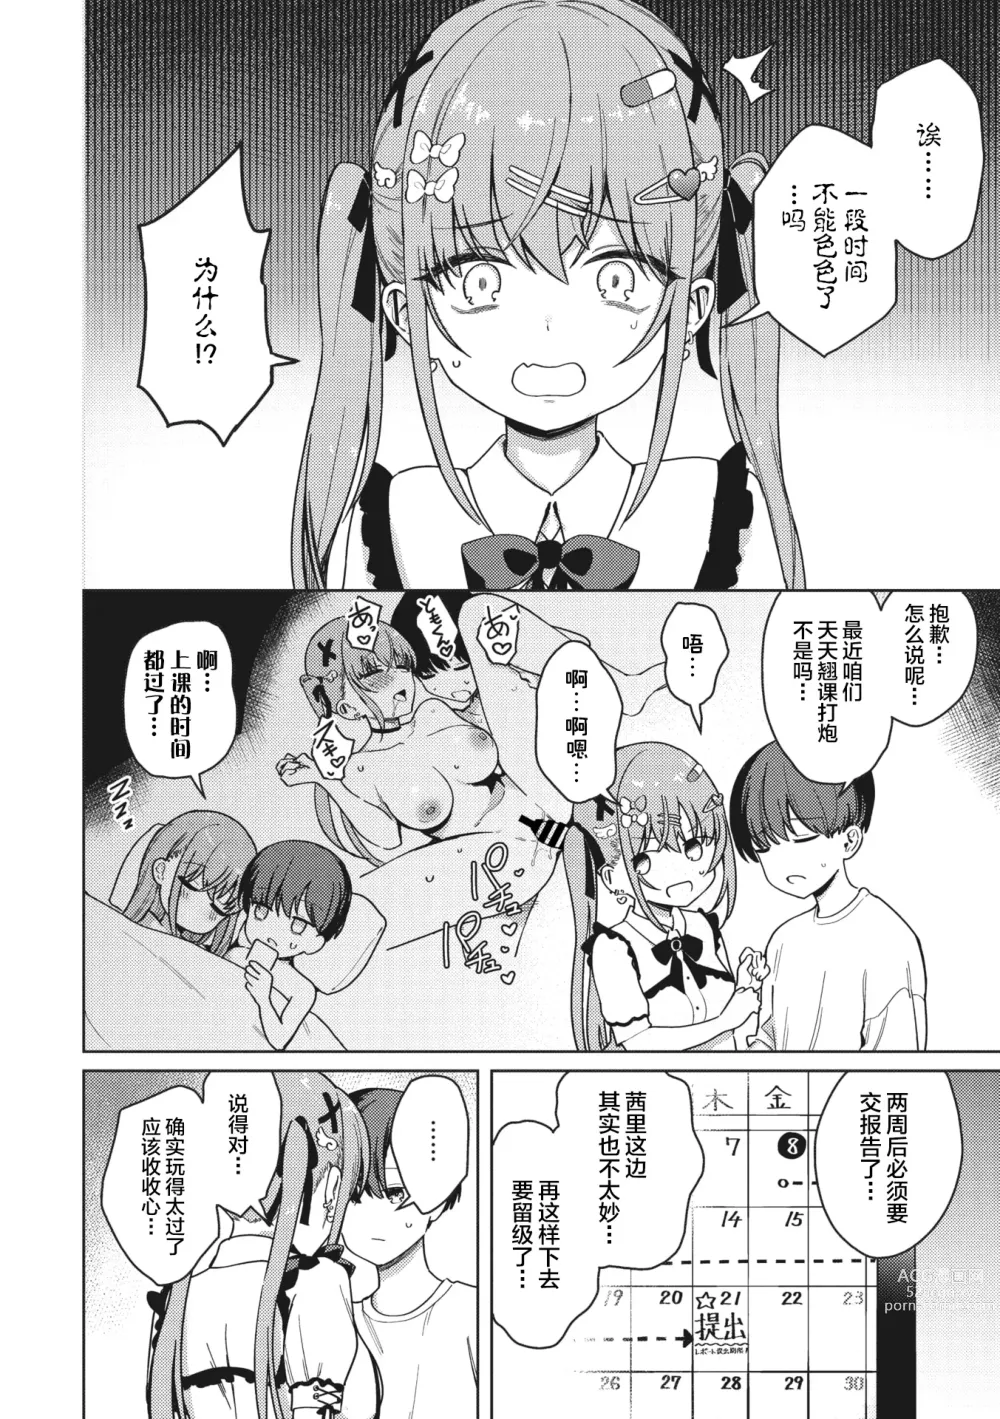 Page 4 of manga Motto! Best Match Mine Girl